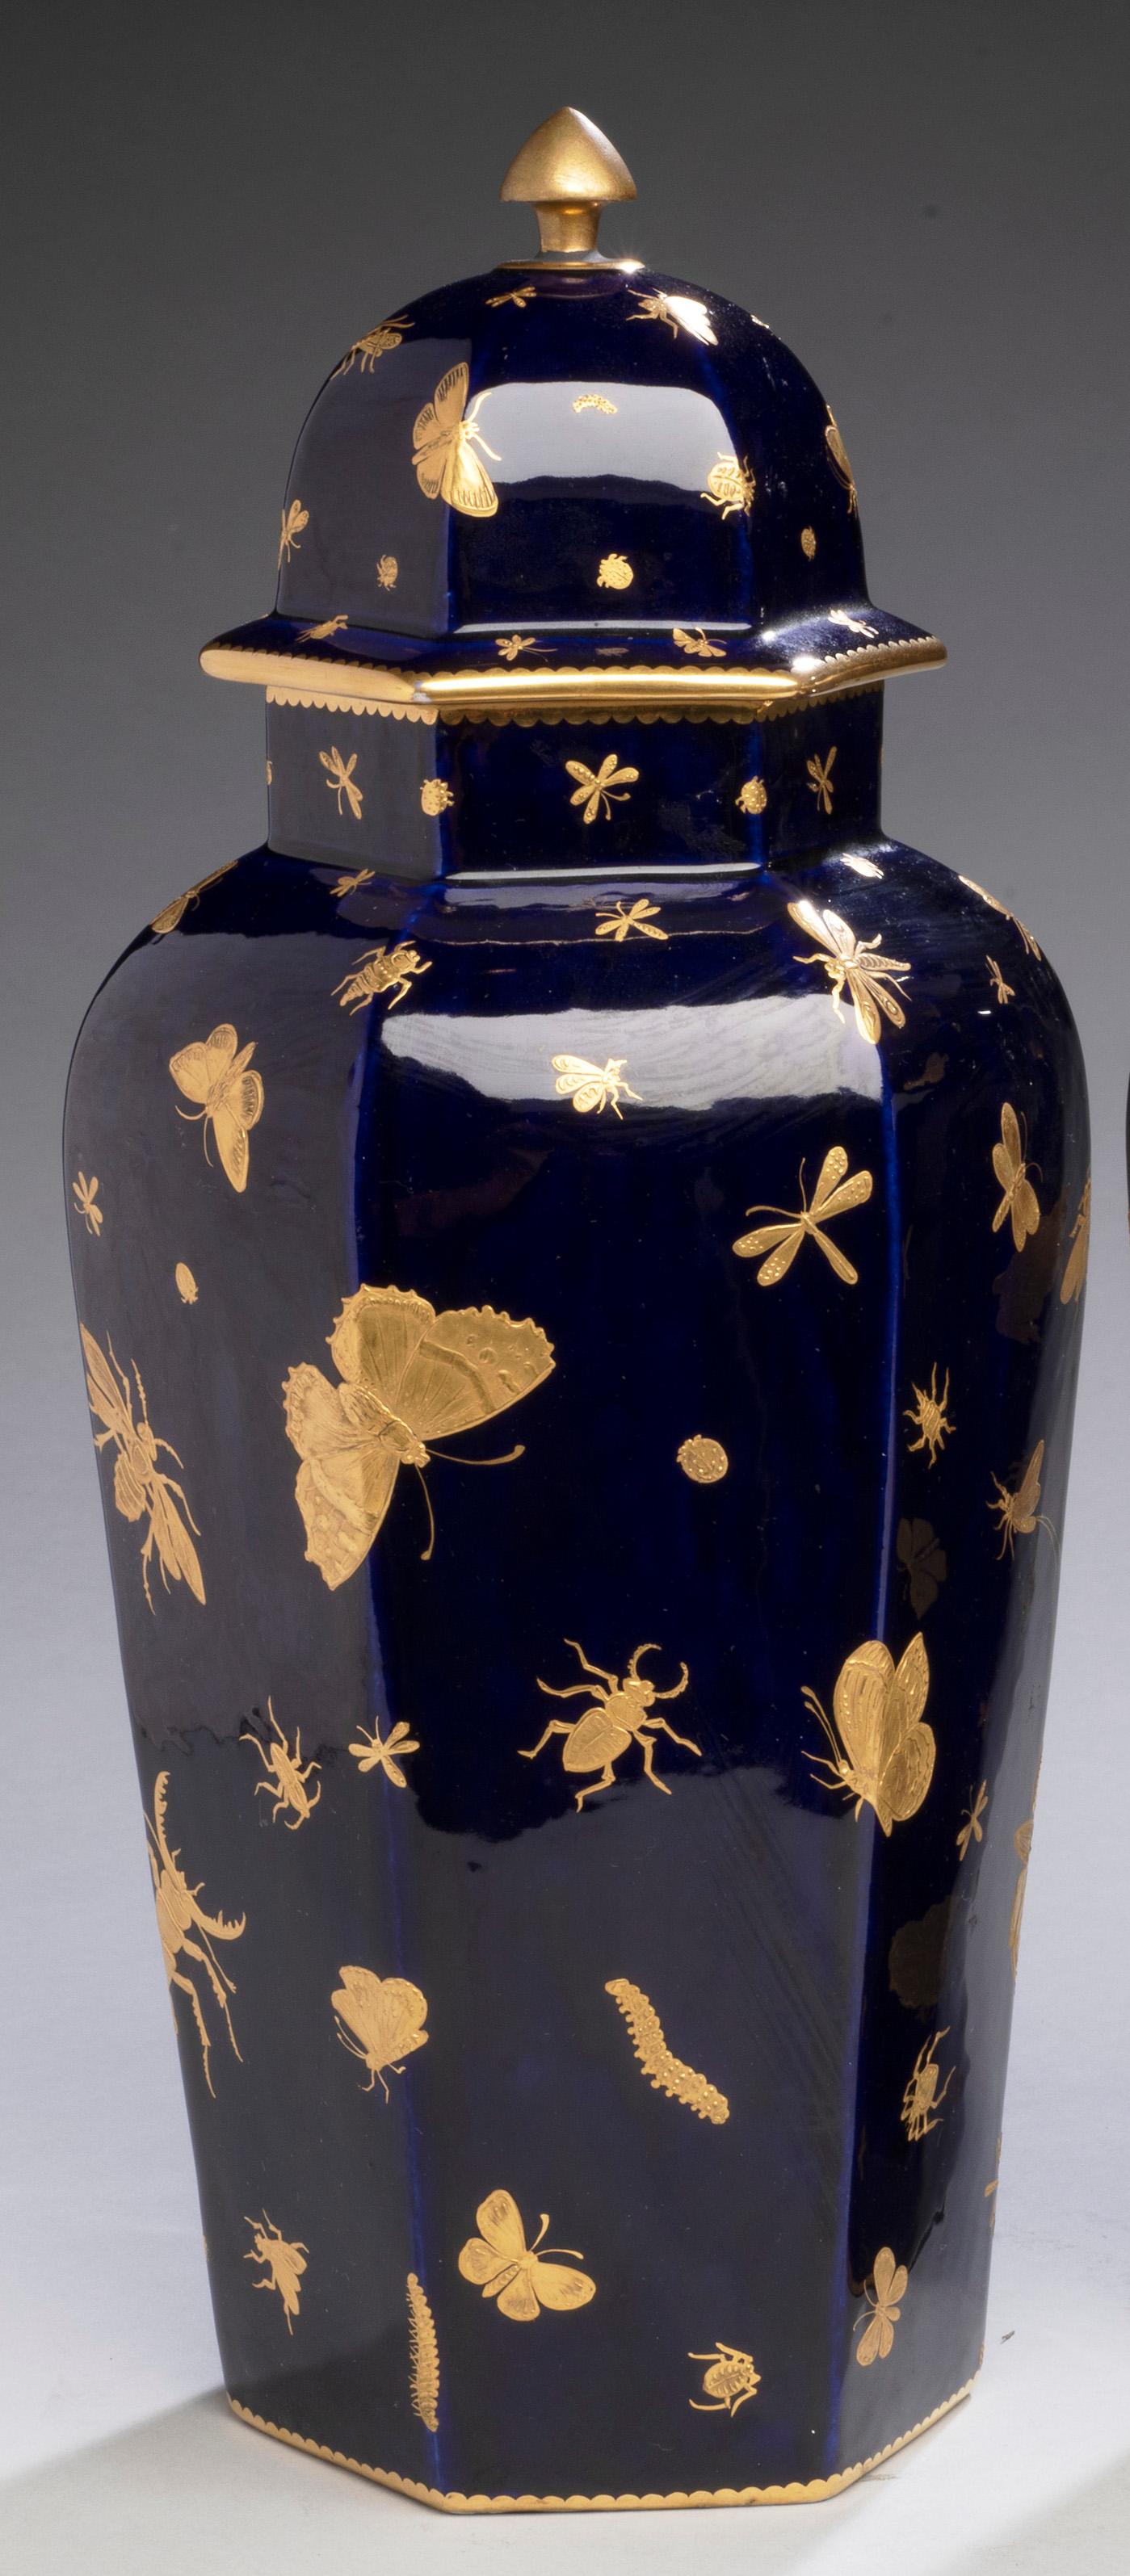 Paire de vases avec insectes dorés à l'ancienne
Angleterre, John Mortlock vers 1875
Porcelaine avec feuille d'or
15 pouces
 
La société Mortlock a été fondée en 1746 par John Mortlock I. Elle est restée une entreprise familiale avec les générations